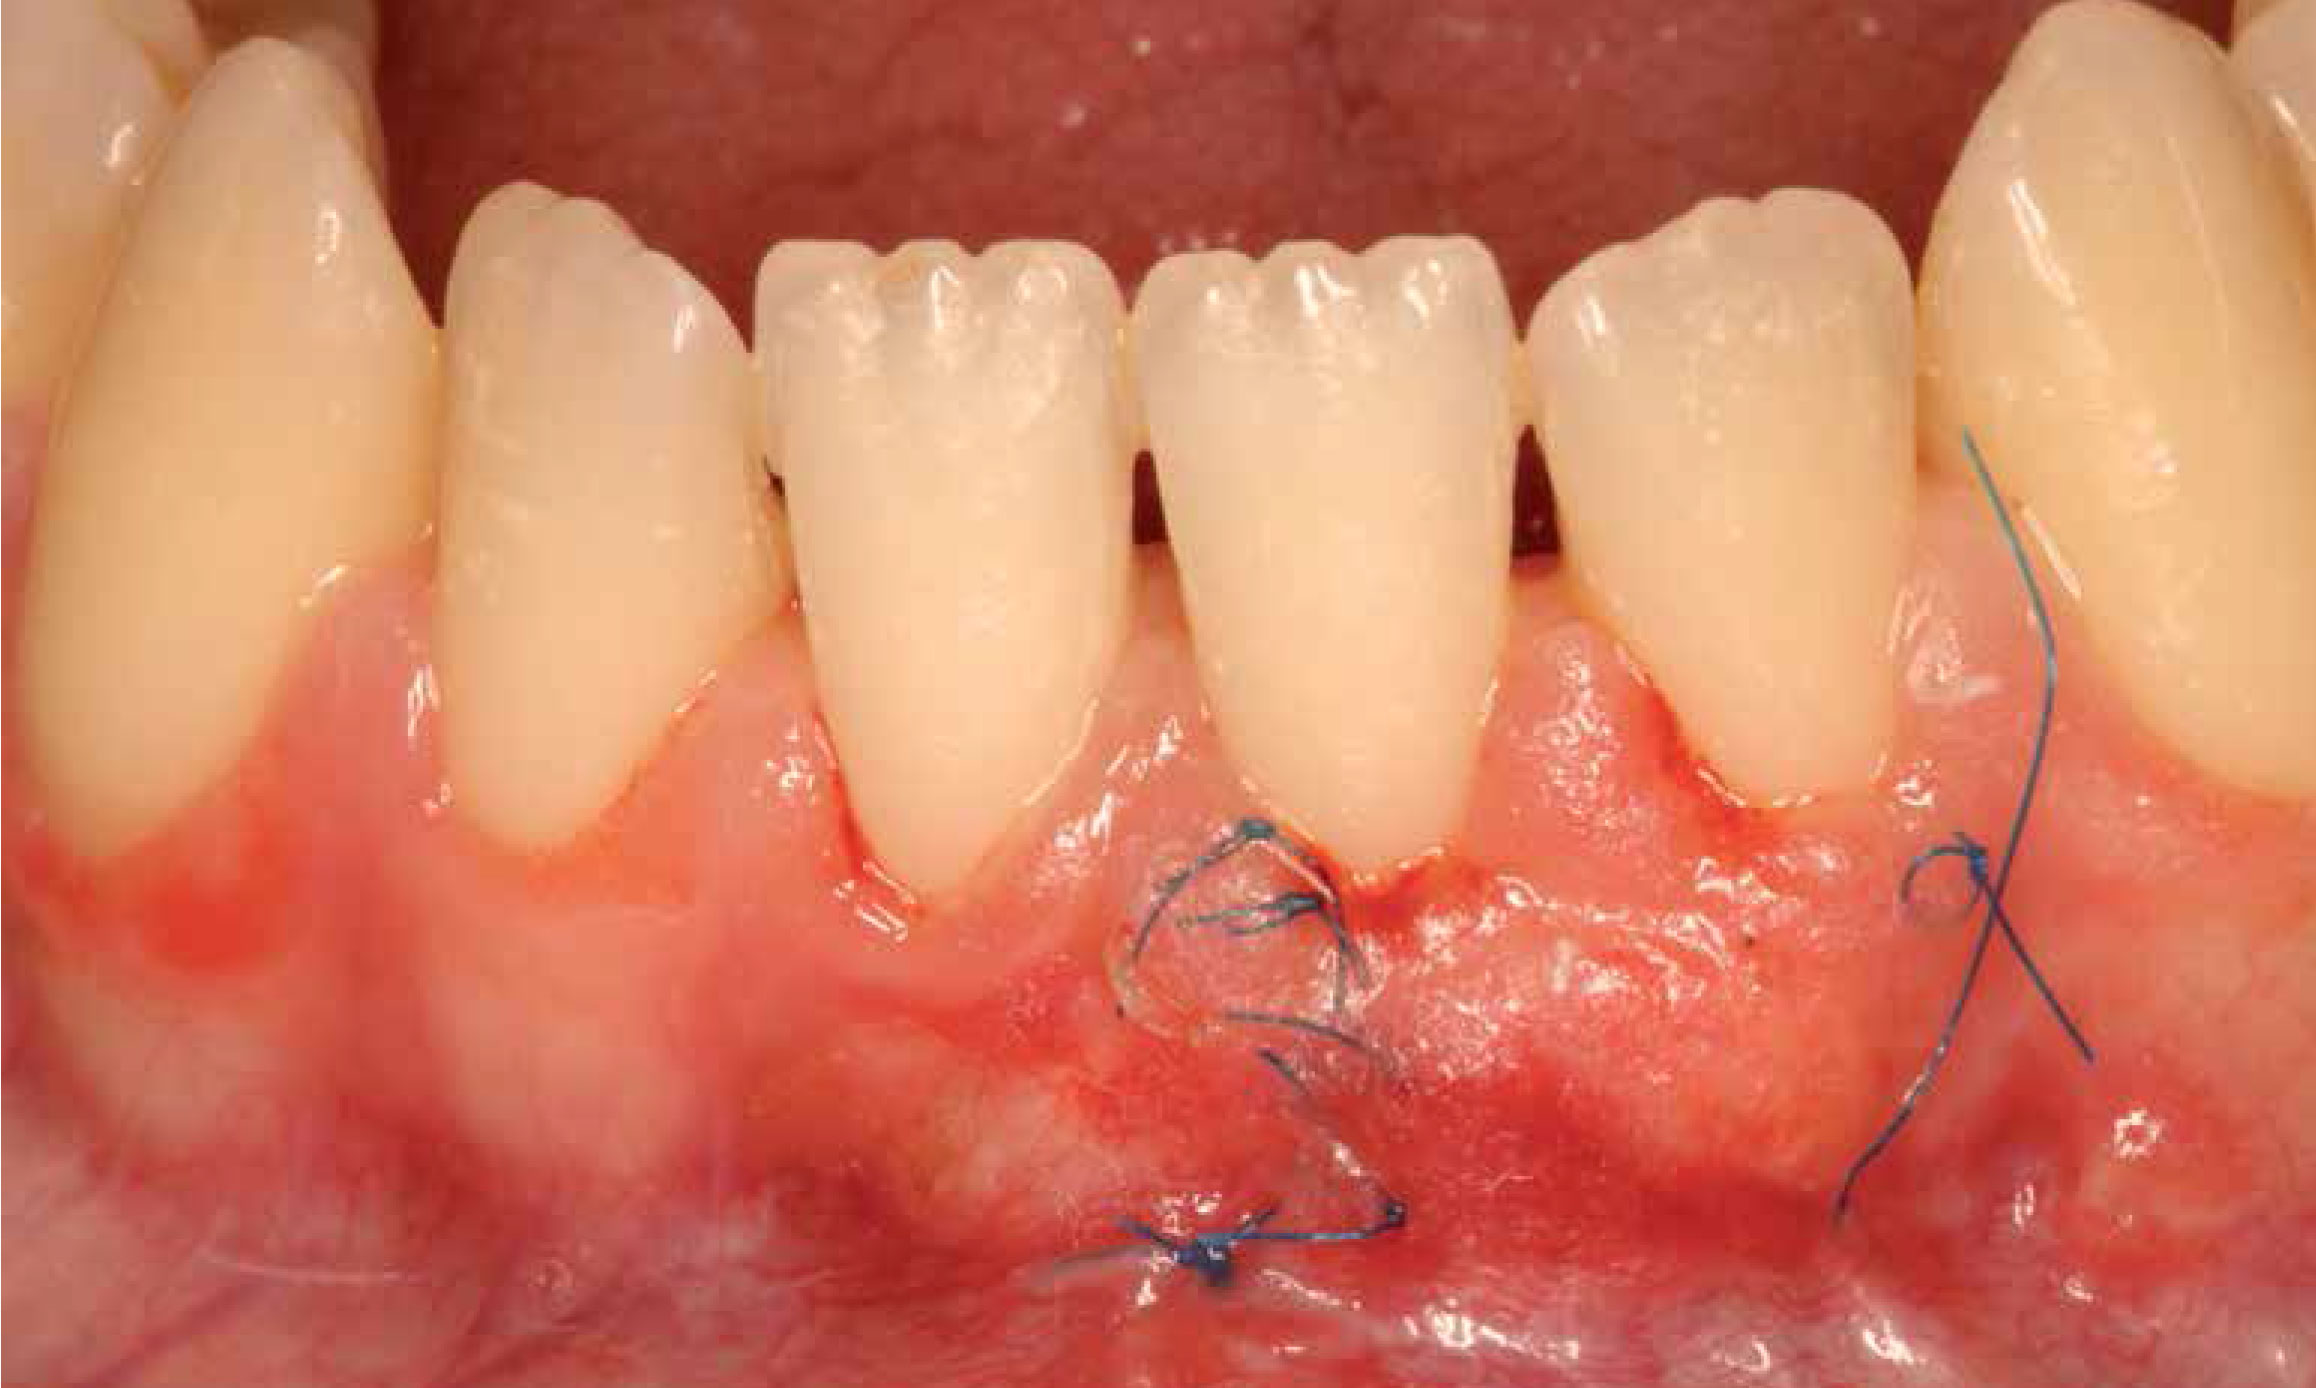 #LecturaRecomendada Cirugía plástica periodontal: Tratamiento de una recesión gingival clase III de Miller mediante técnica bilaminar, injerto de tejido conectivo y amelogeninas